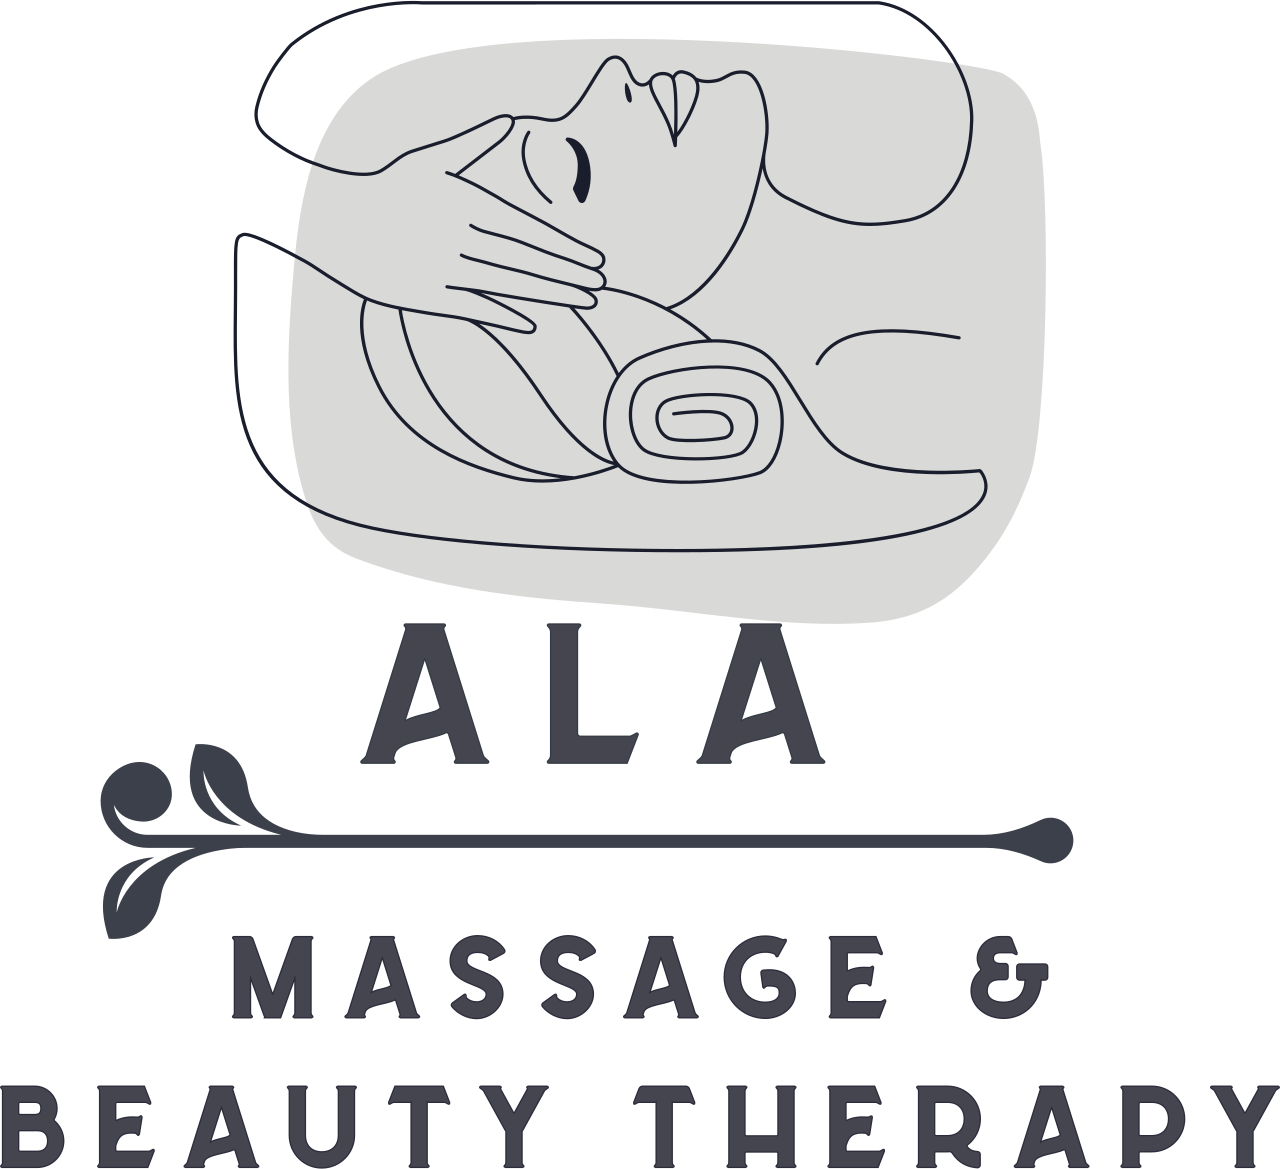 ALA 's logo